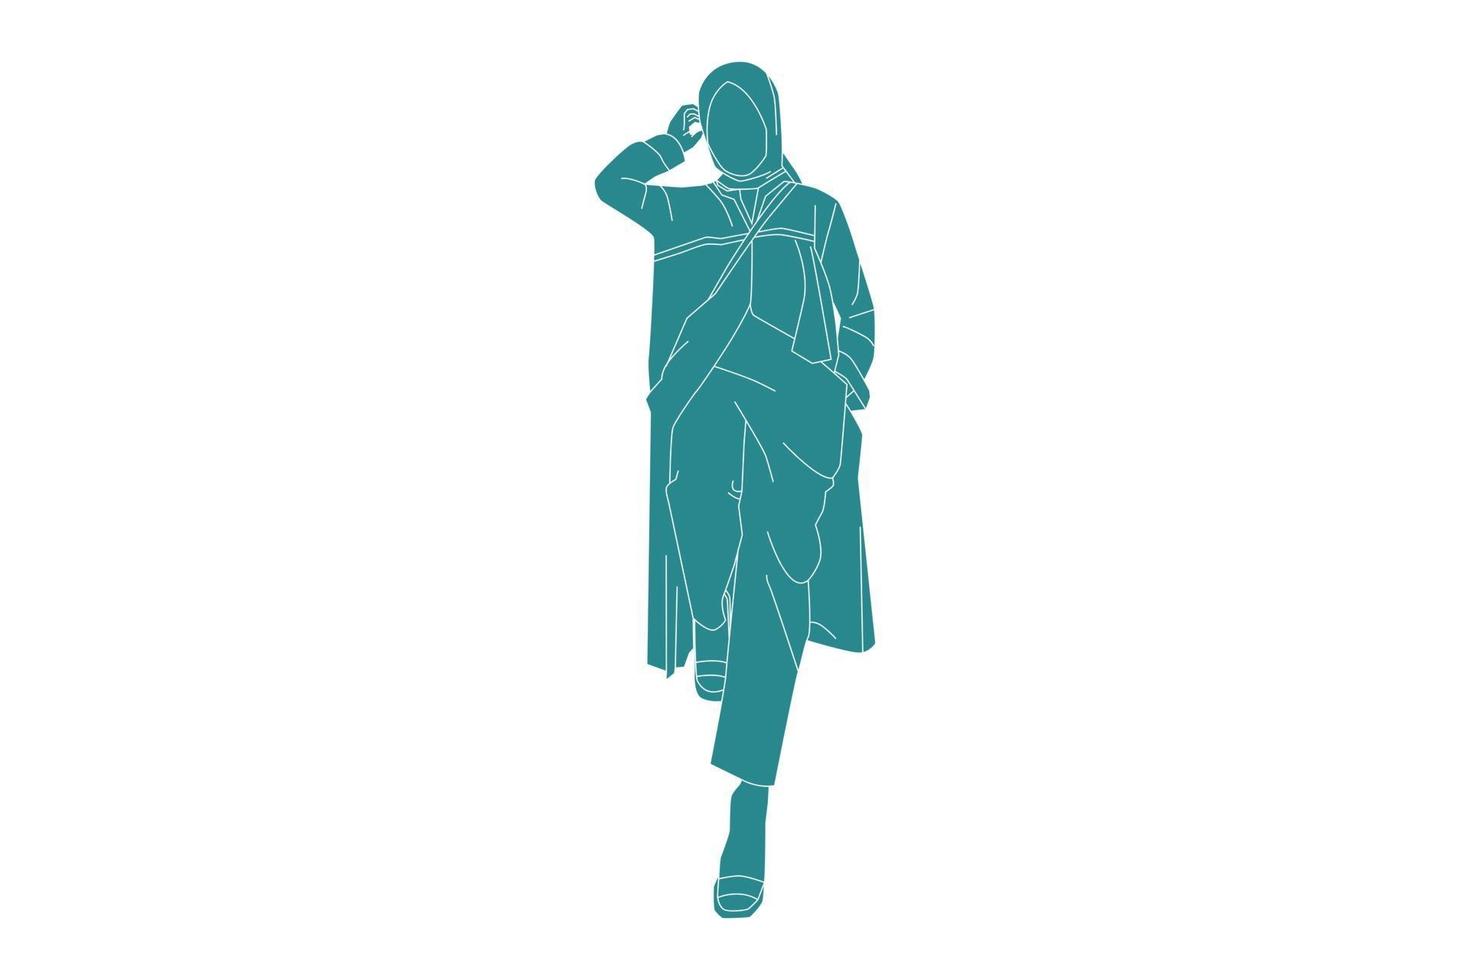 Vektor-Illustration der Frau trägt ein muslimisches Outfit, flacher Stil mit Umriss vektor